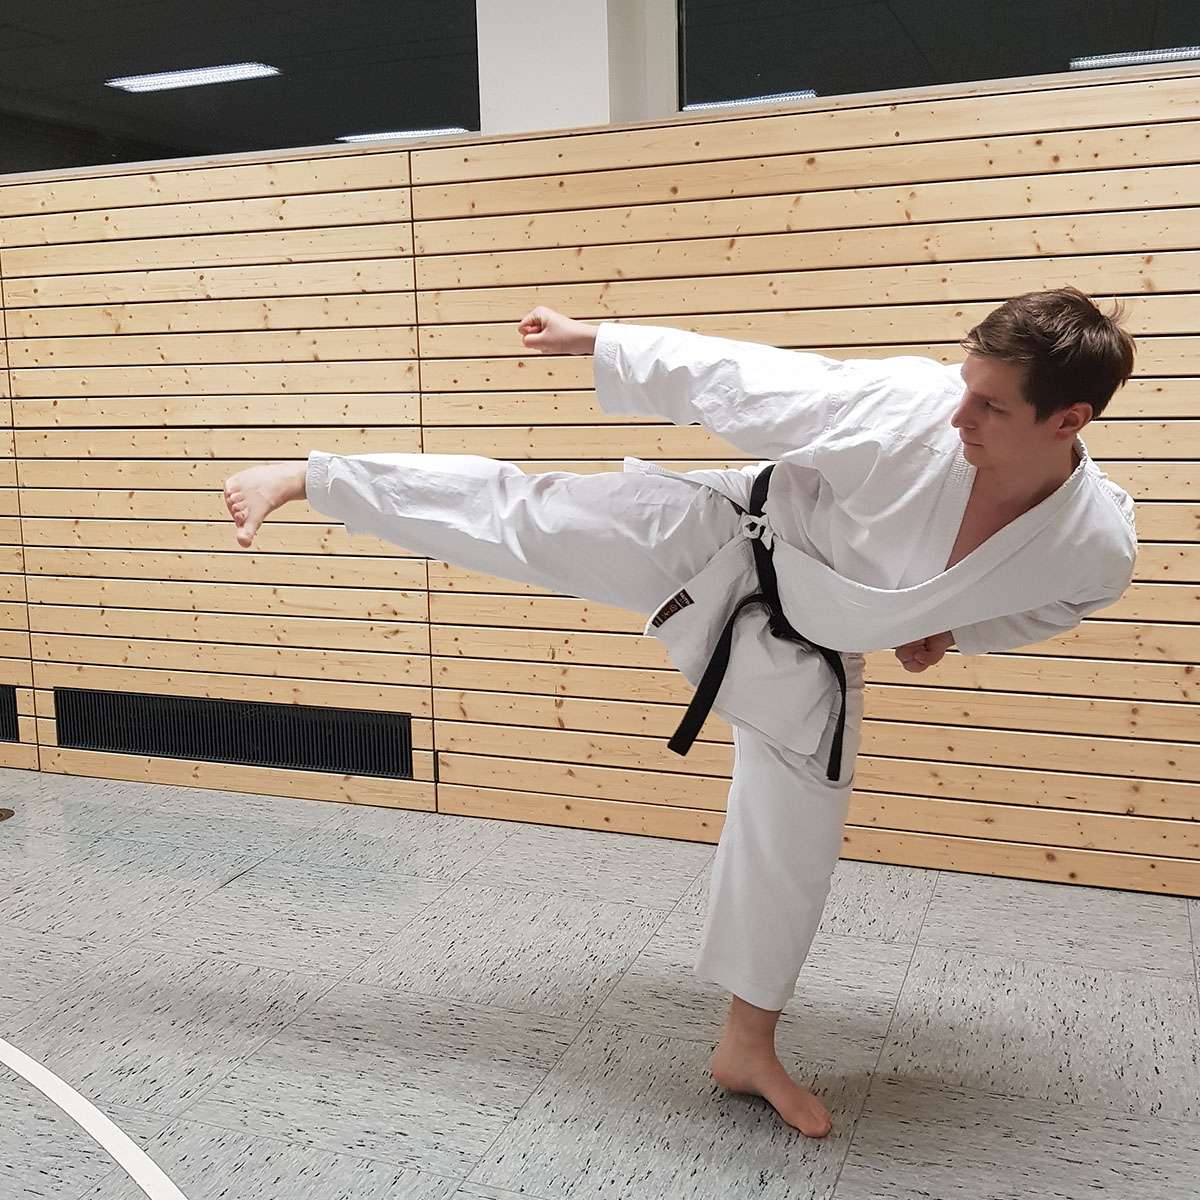 Joschka Heinemann Karate1